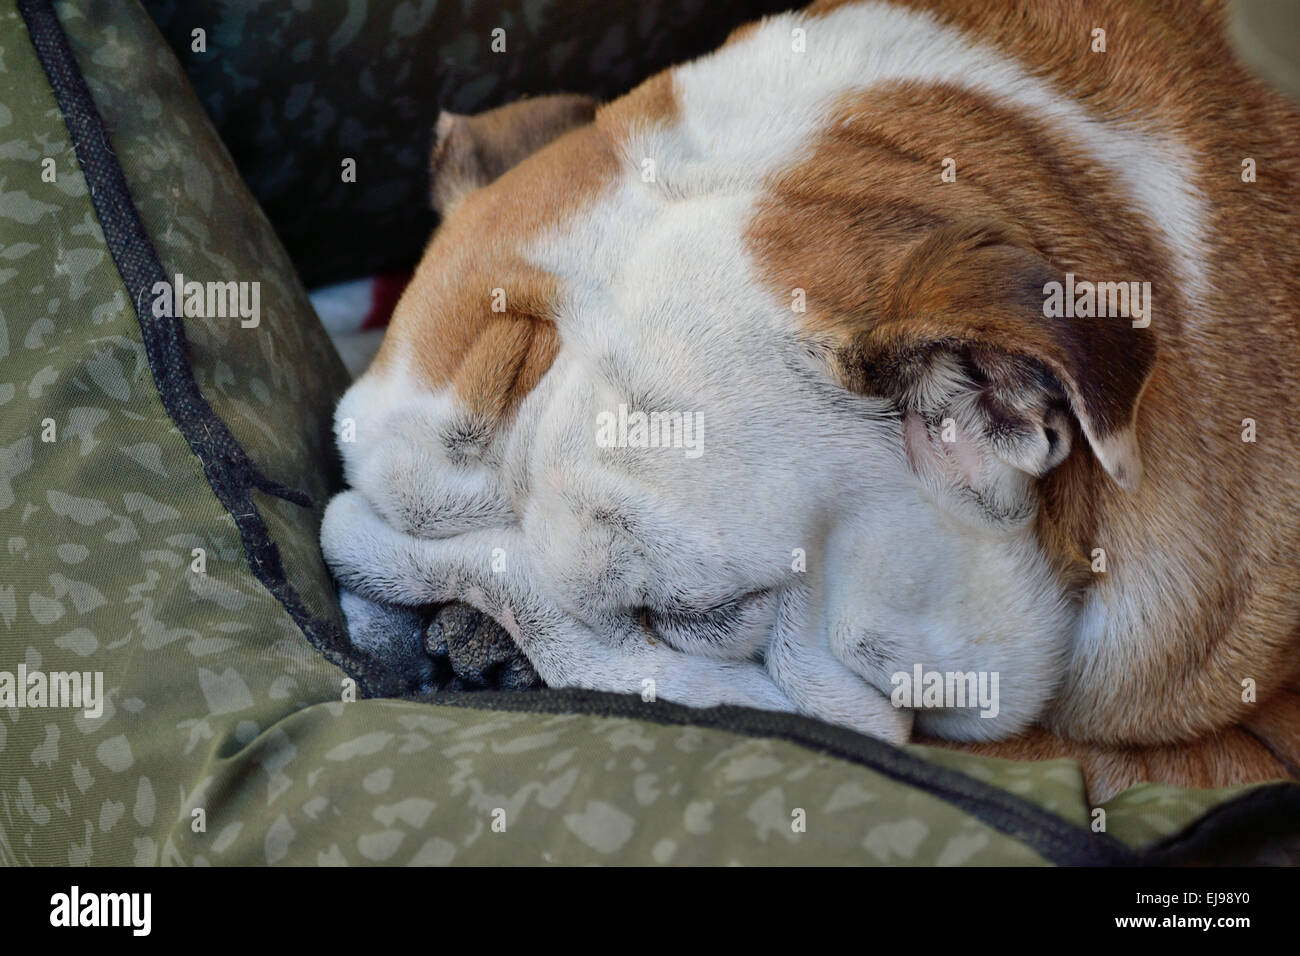 English Bulldog sleeping Stock Photo